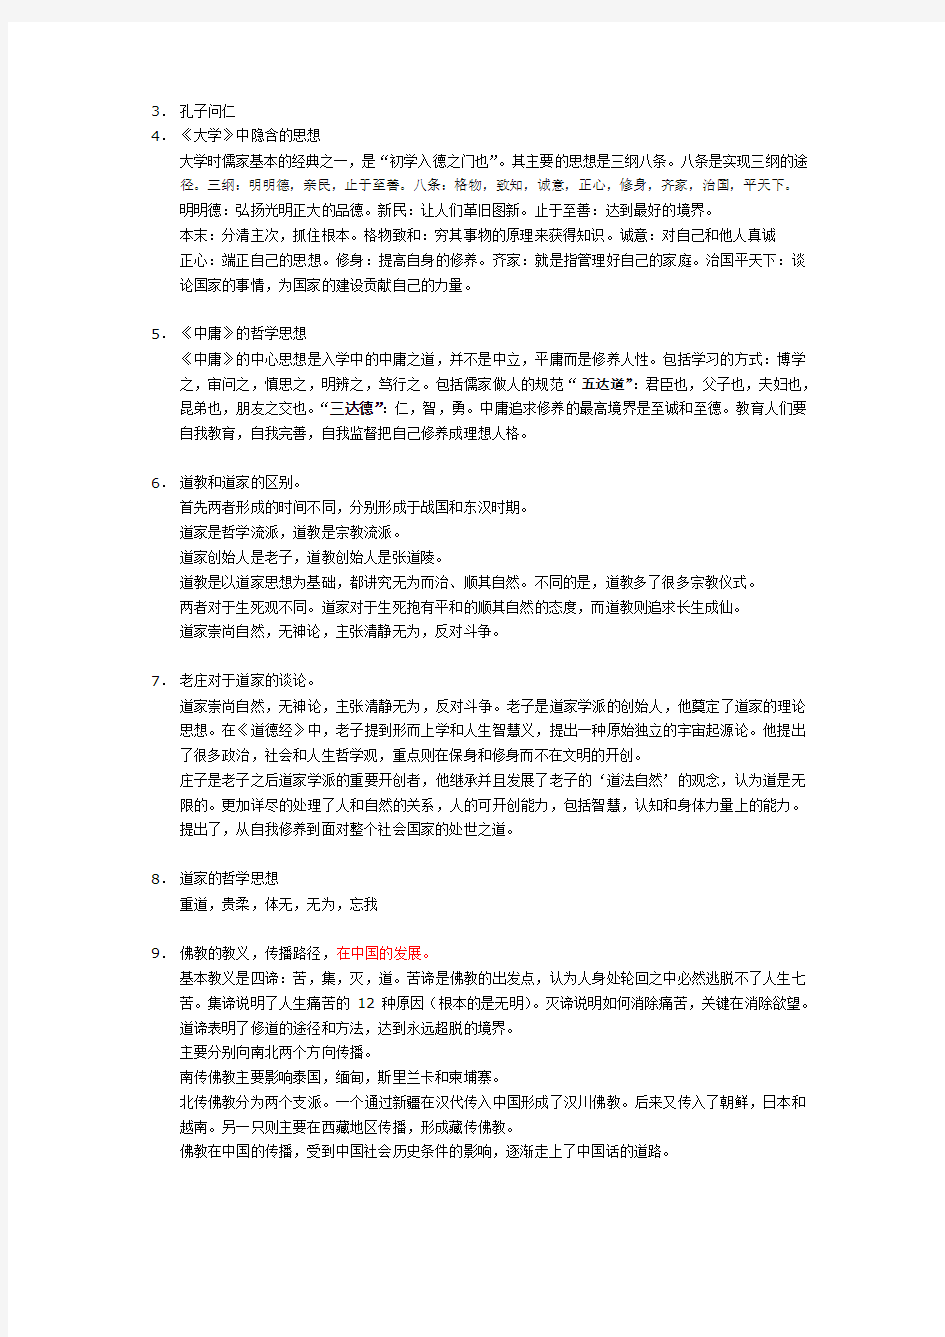 选修中国文化概论考试大纲和笔记整理